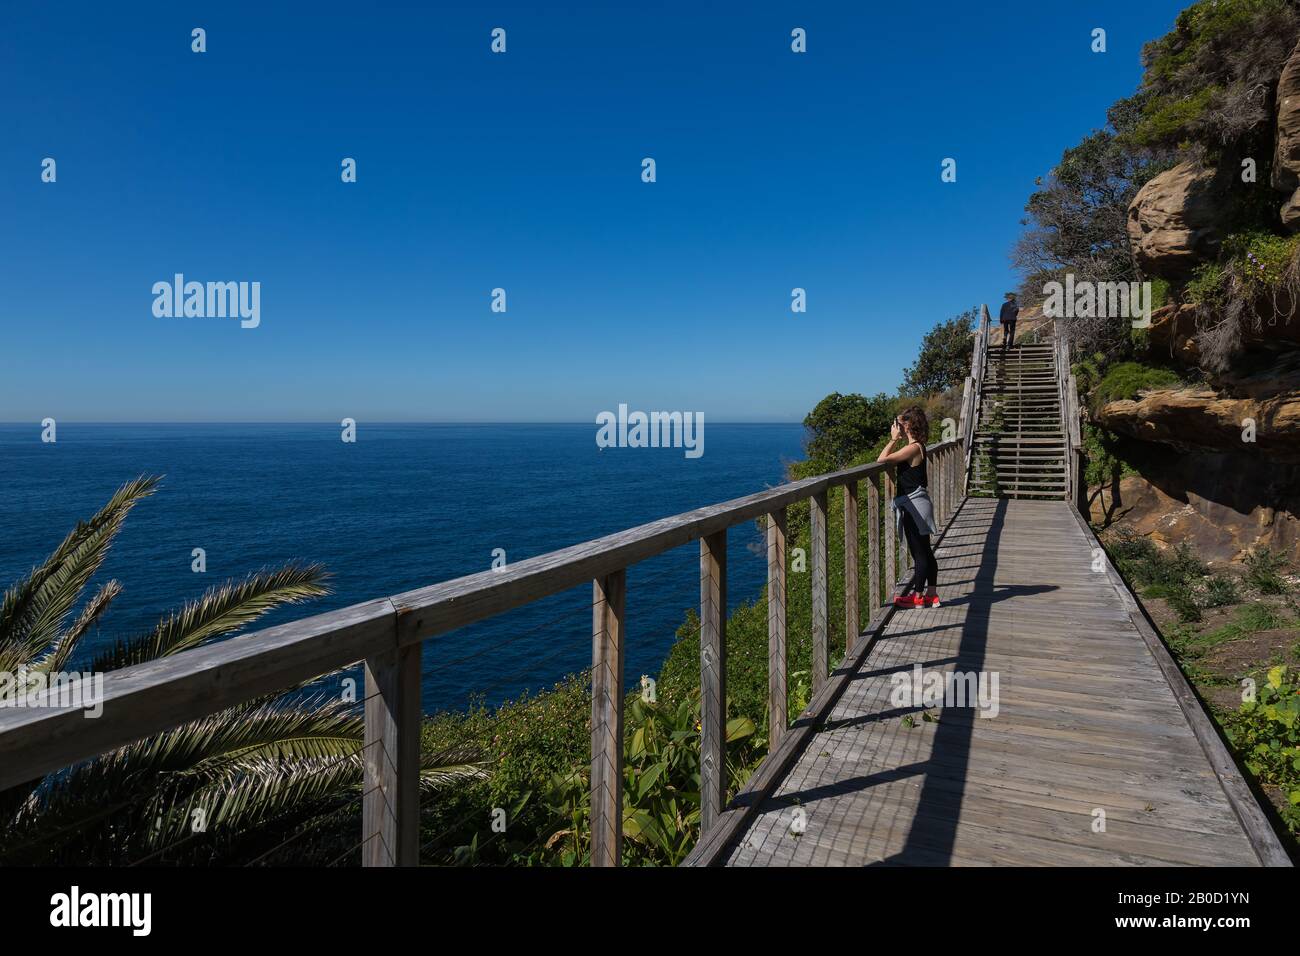 The Federation Cliff Walk, Dover Heights, Sydney. Es un paseo de cinco kilómetros por lo alto de un acantilado con unas vistas increíbles del Océano Pacífico desde Dover Heights hasta Foto de stock